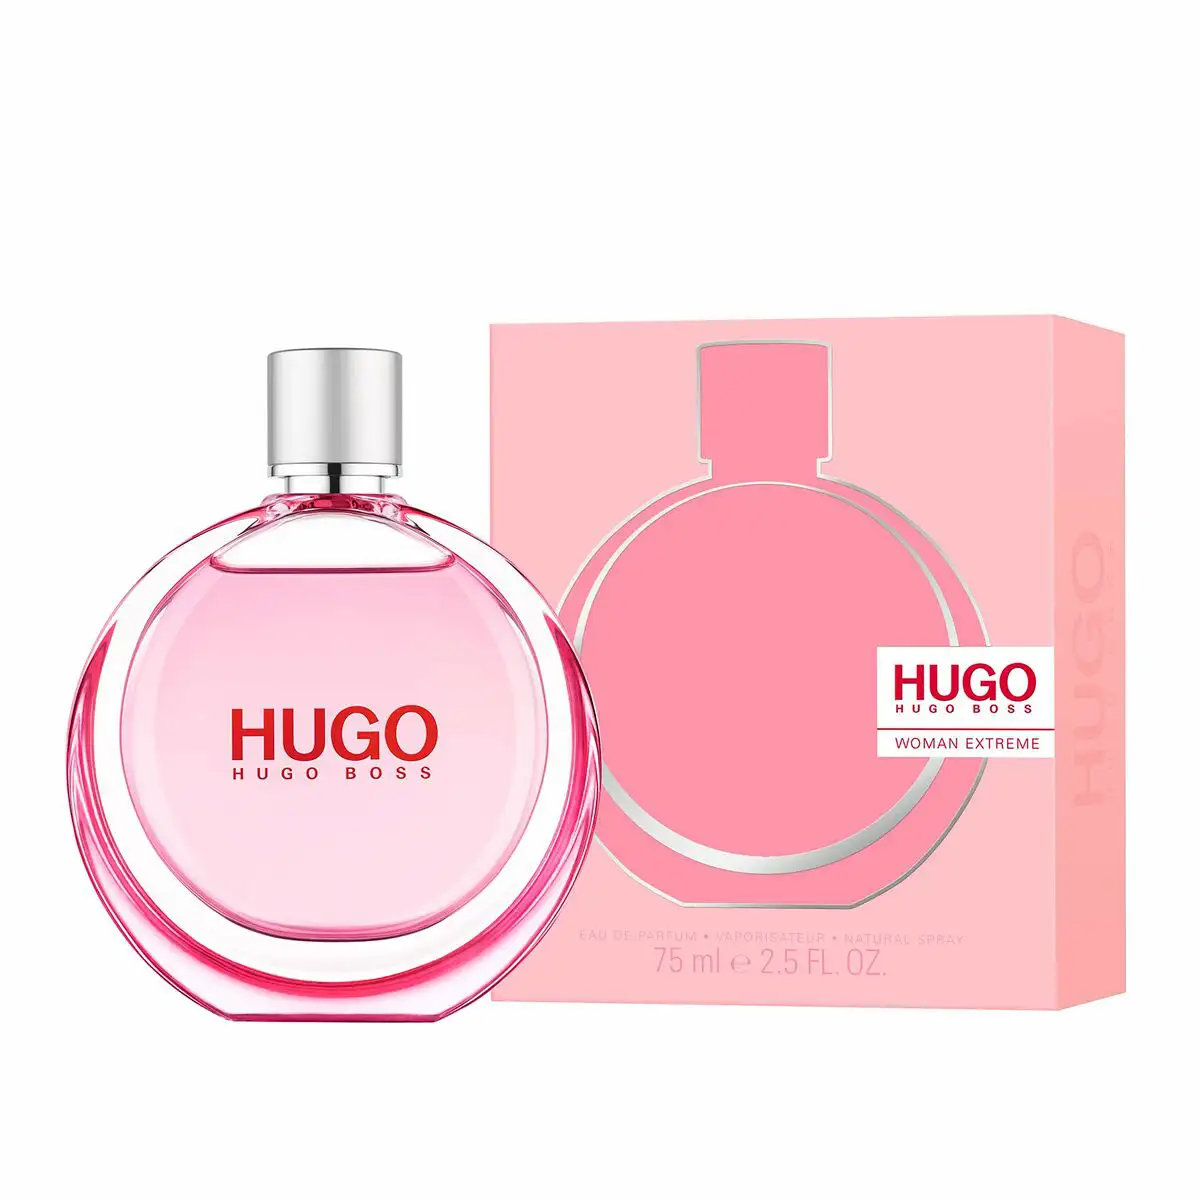 Parfum femme hugo boss edp hugo woman extreme 75 ml_6744. DIAYTAR SENEGAL - Votre Passage vers le Chic et l'Élégance. Naviguez à travers notre boutique en ligne pour trouver des produits qui ajoutent une touche sophistiquée à votre style.